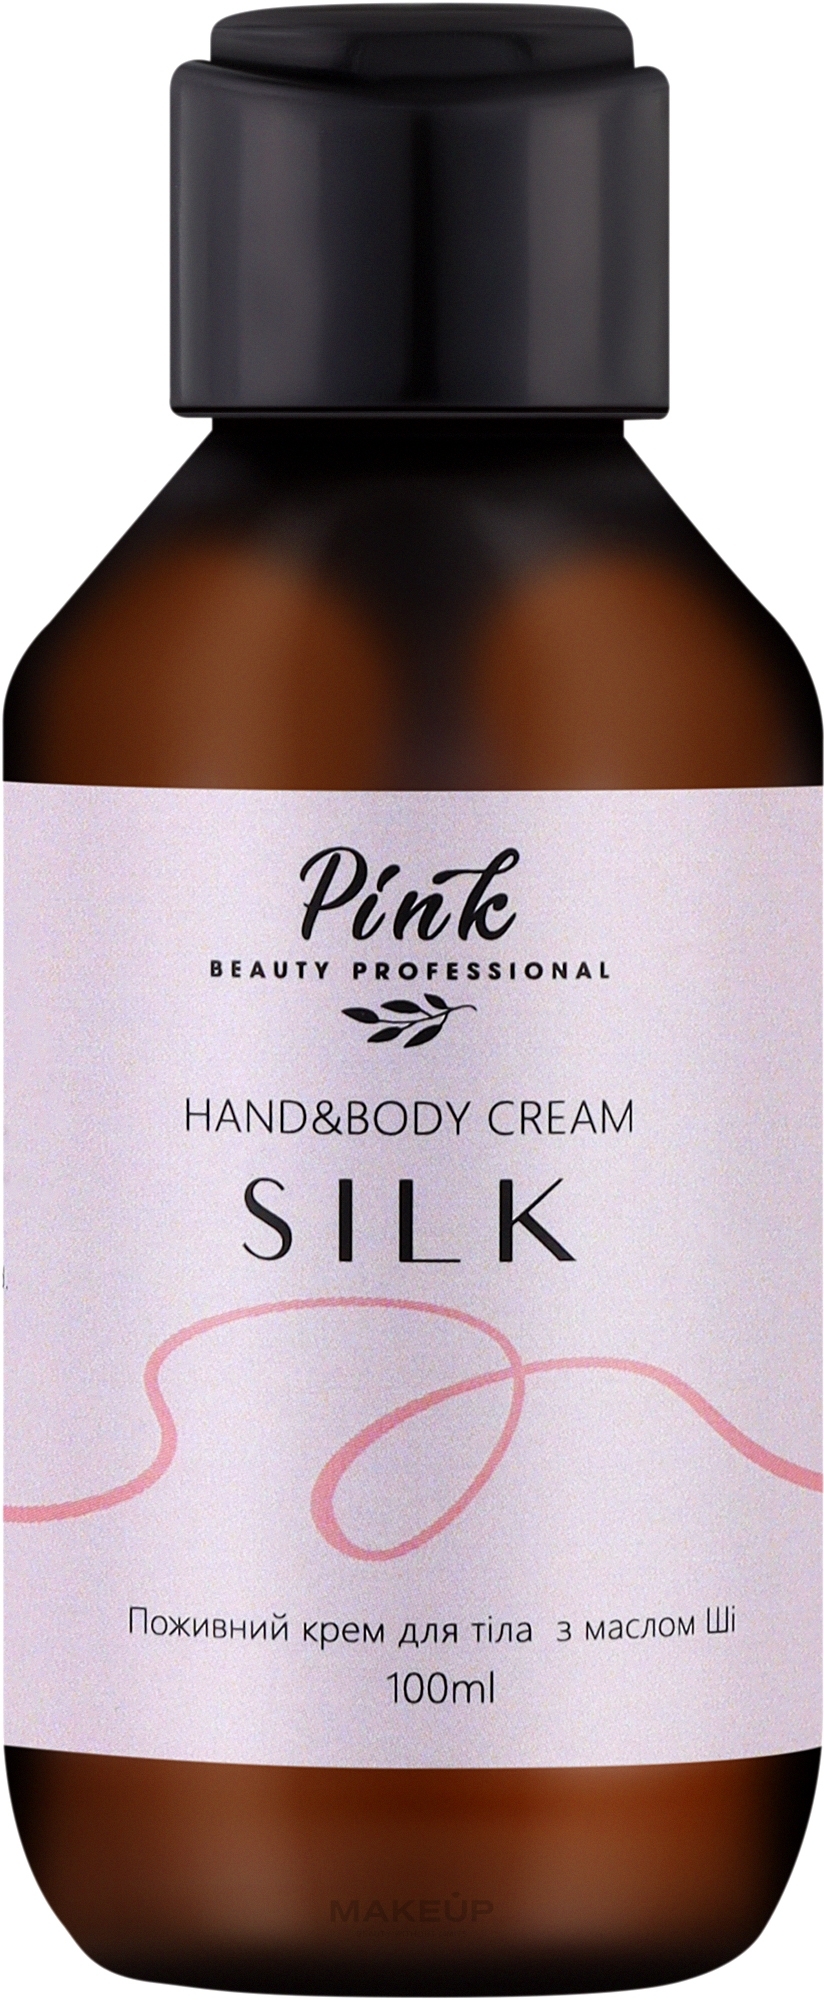 Поживний крем для тіла та рук з маслом Ші "Silk" - Pink Hand & Body Cream — фото 100ml